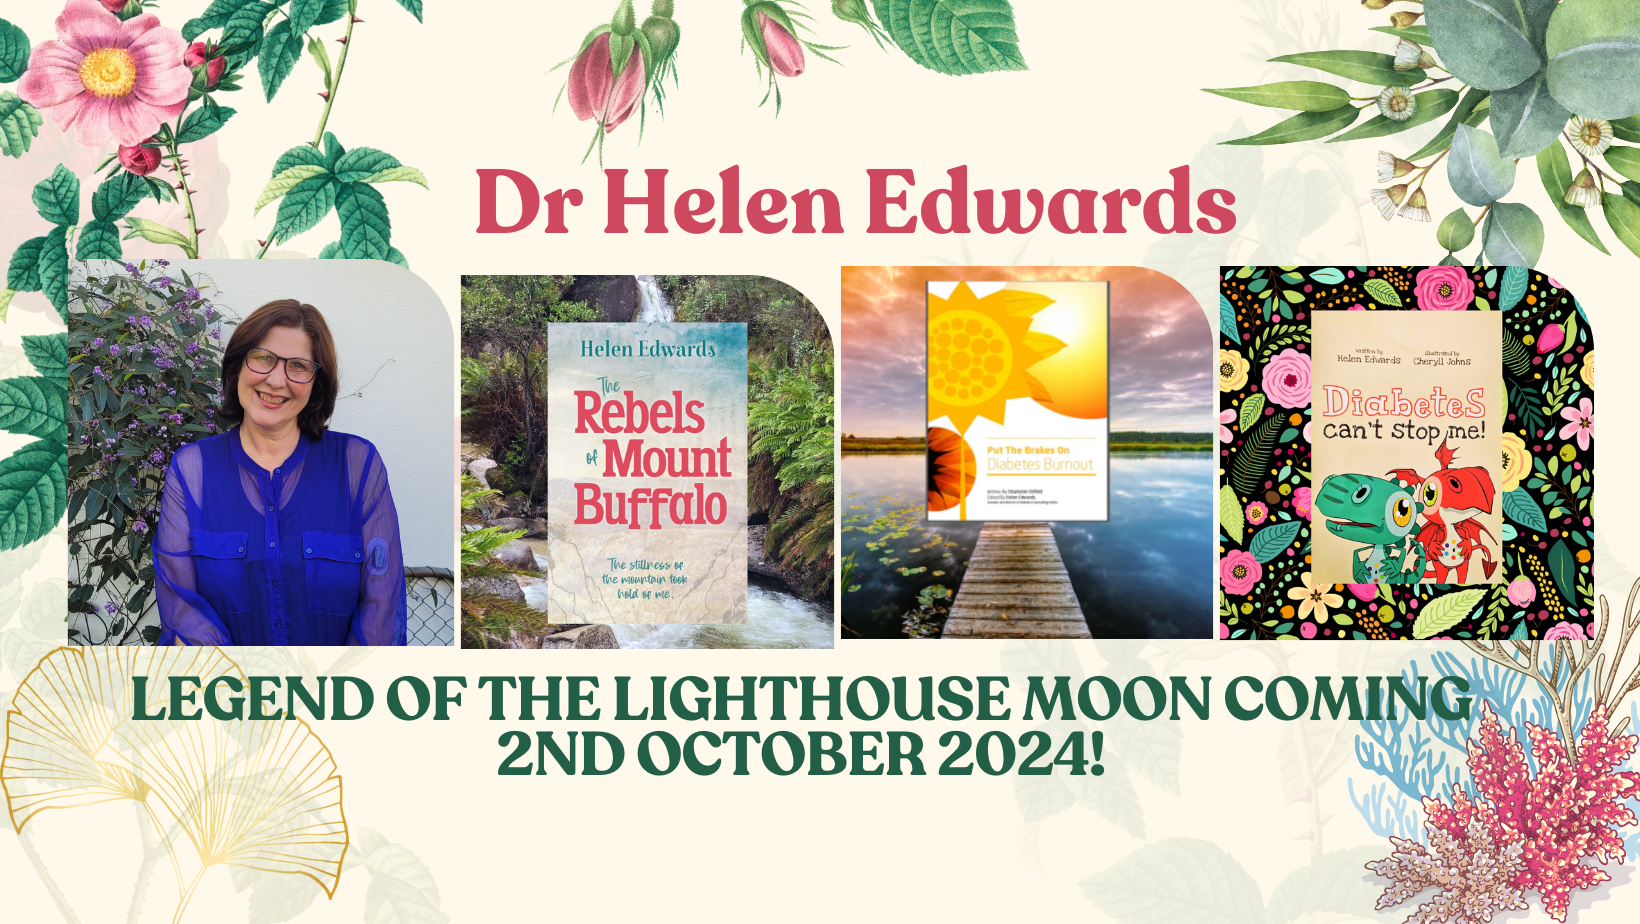 Dr Helen Edwards children's author